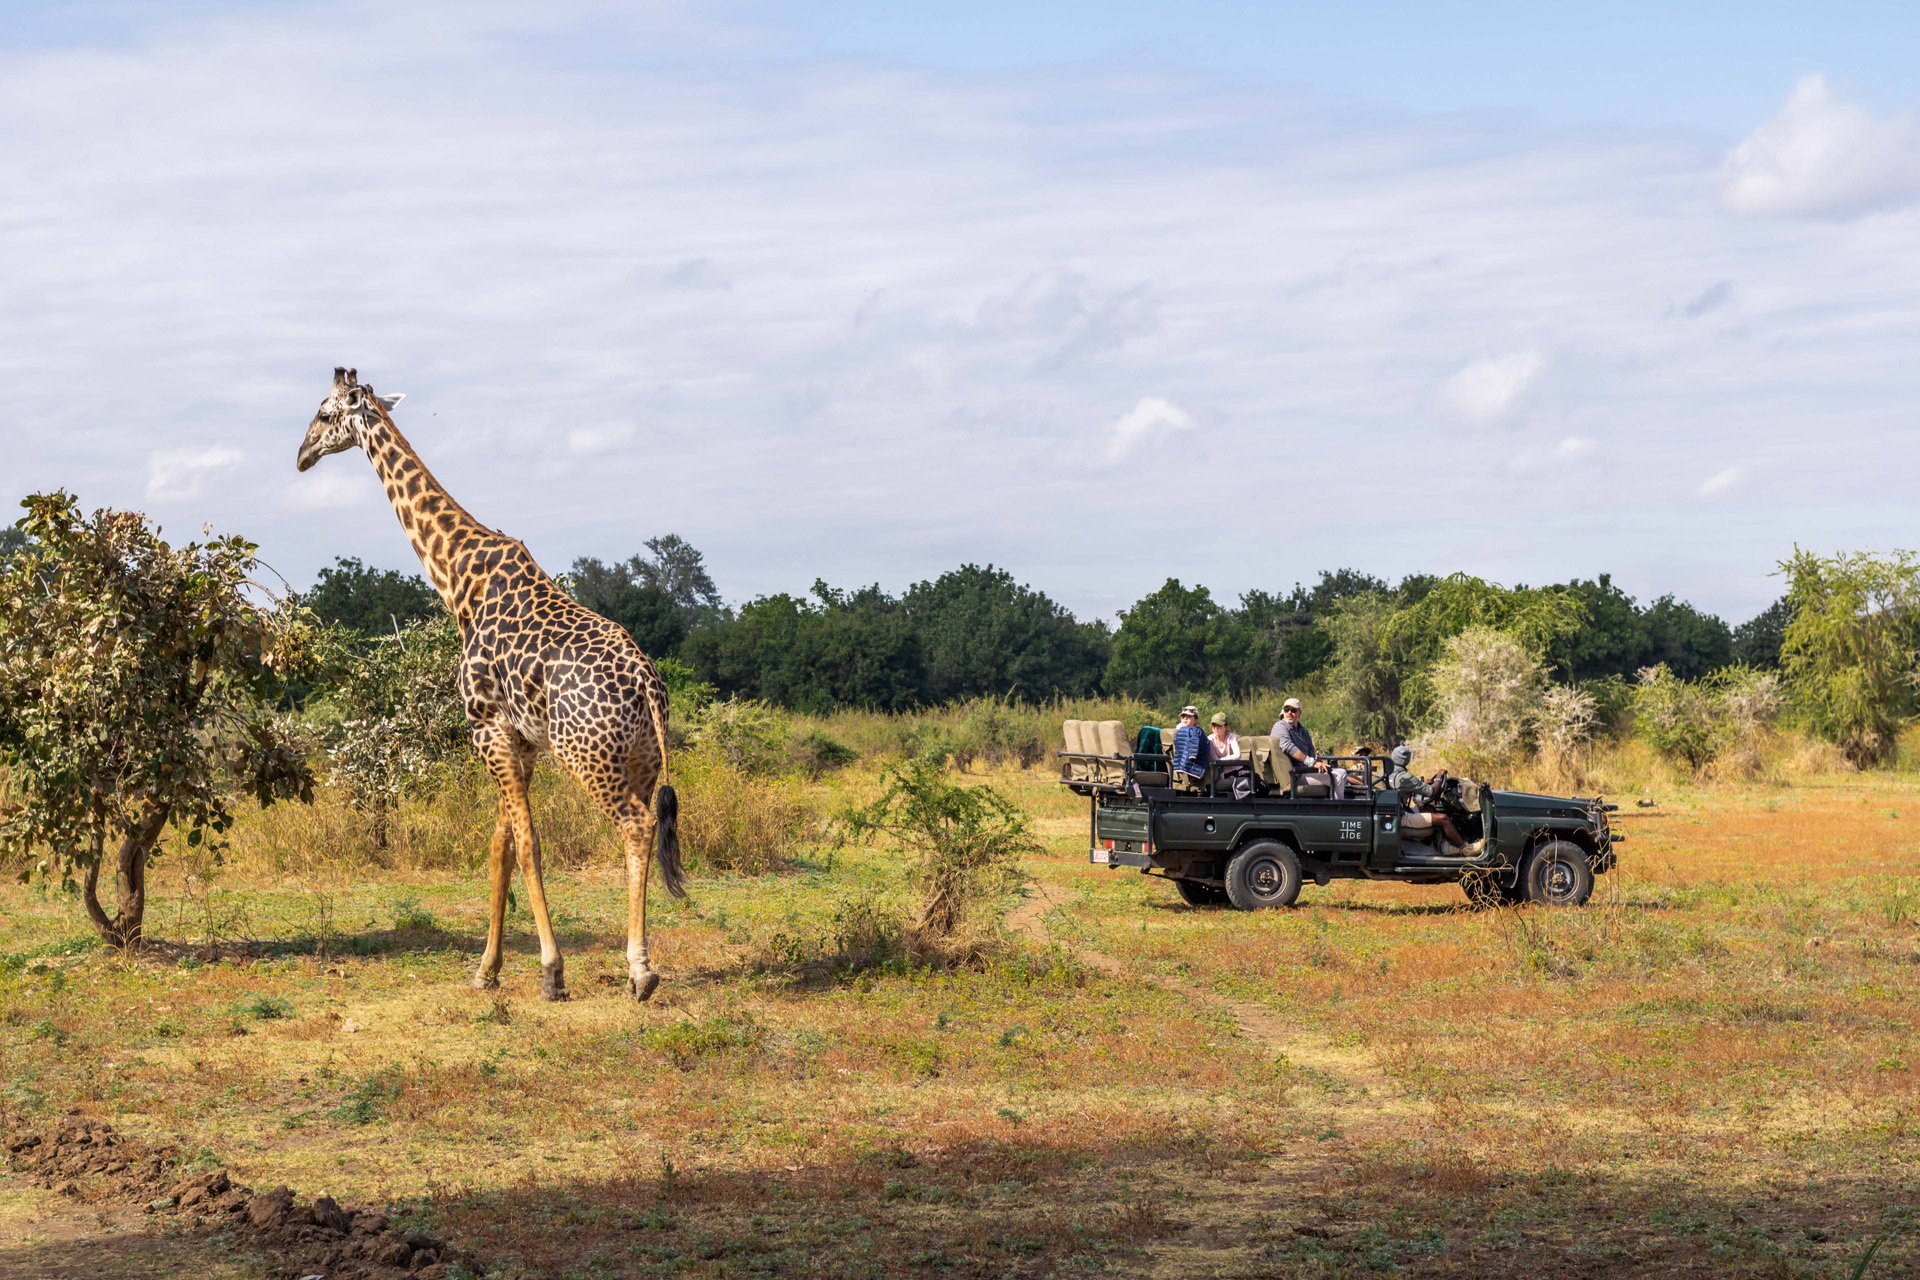 A giraffe and a safari truck